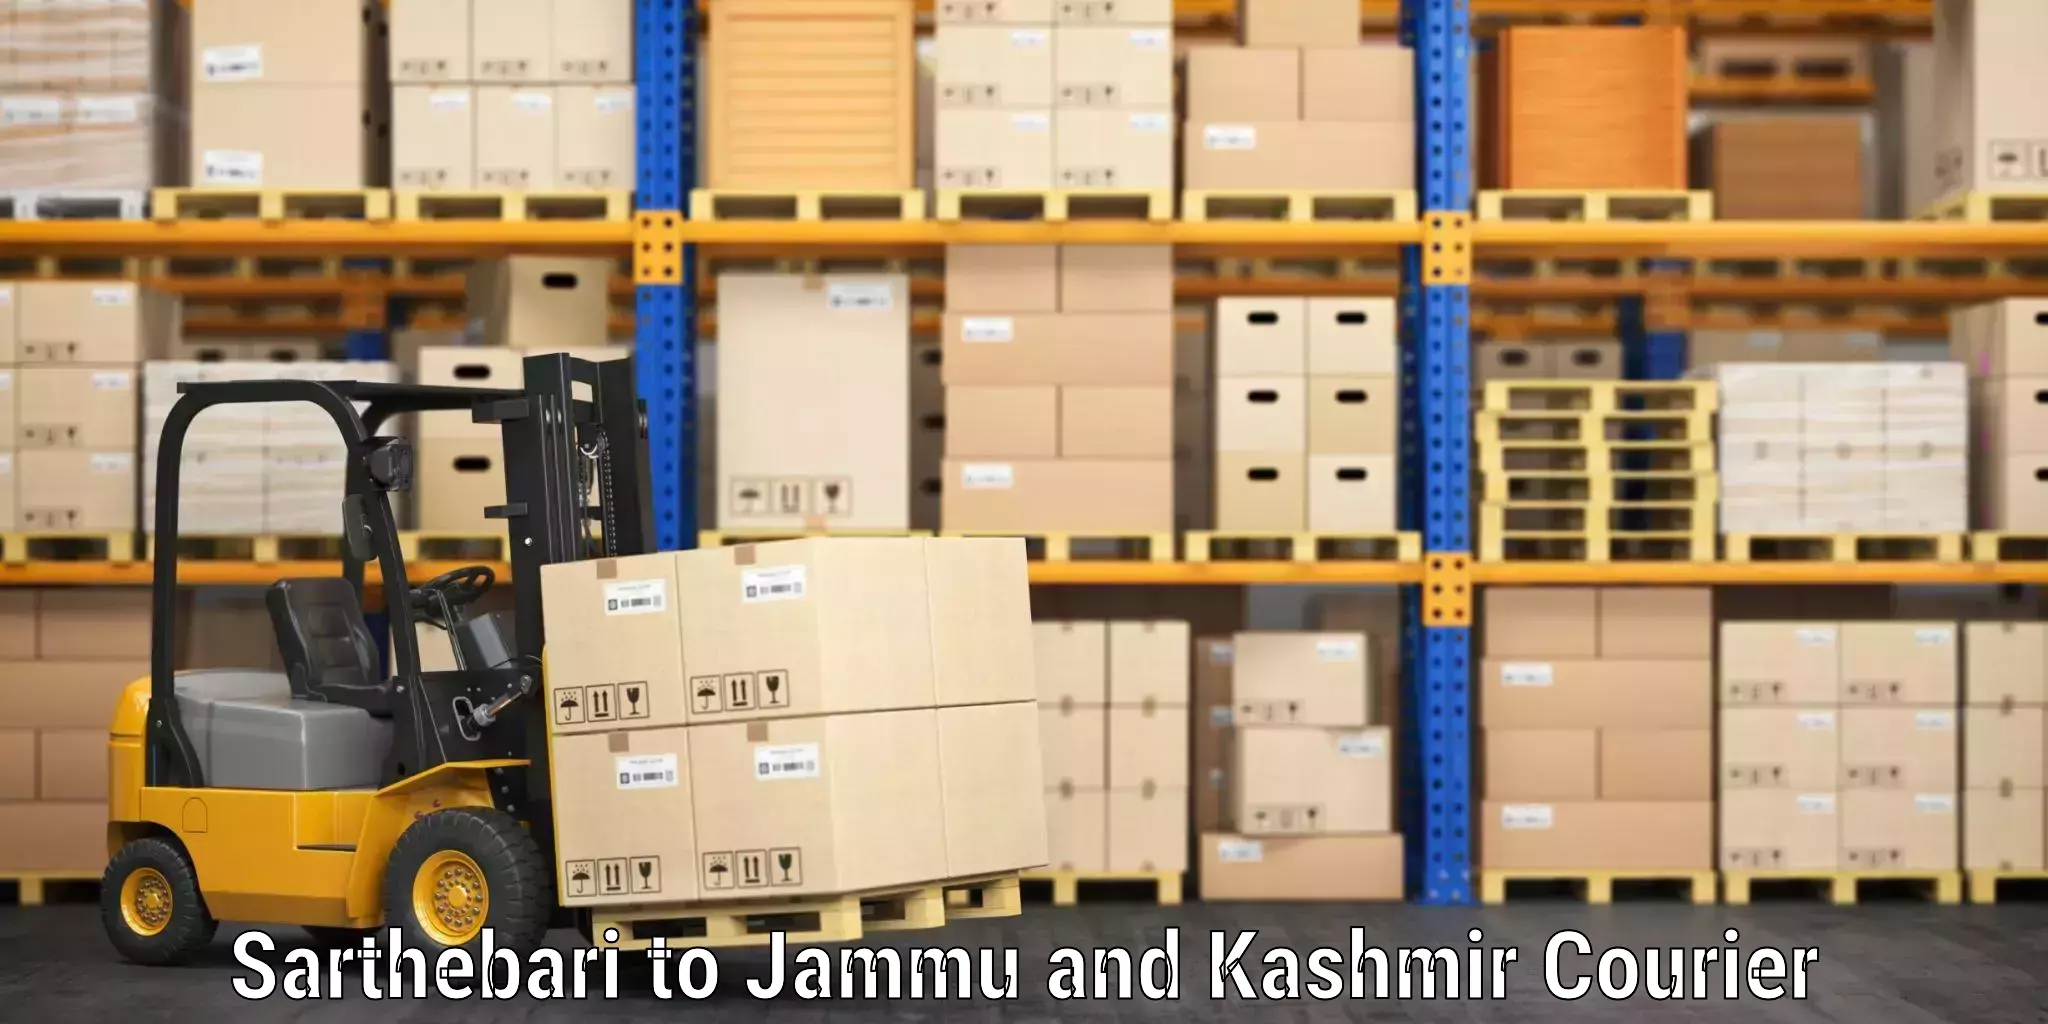 Luggage shipment tracking Sarthebari to Jammu and Kashmir